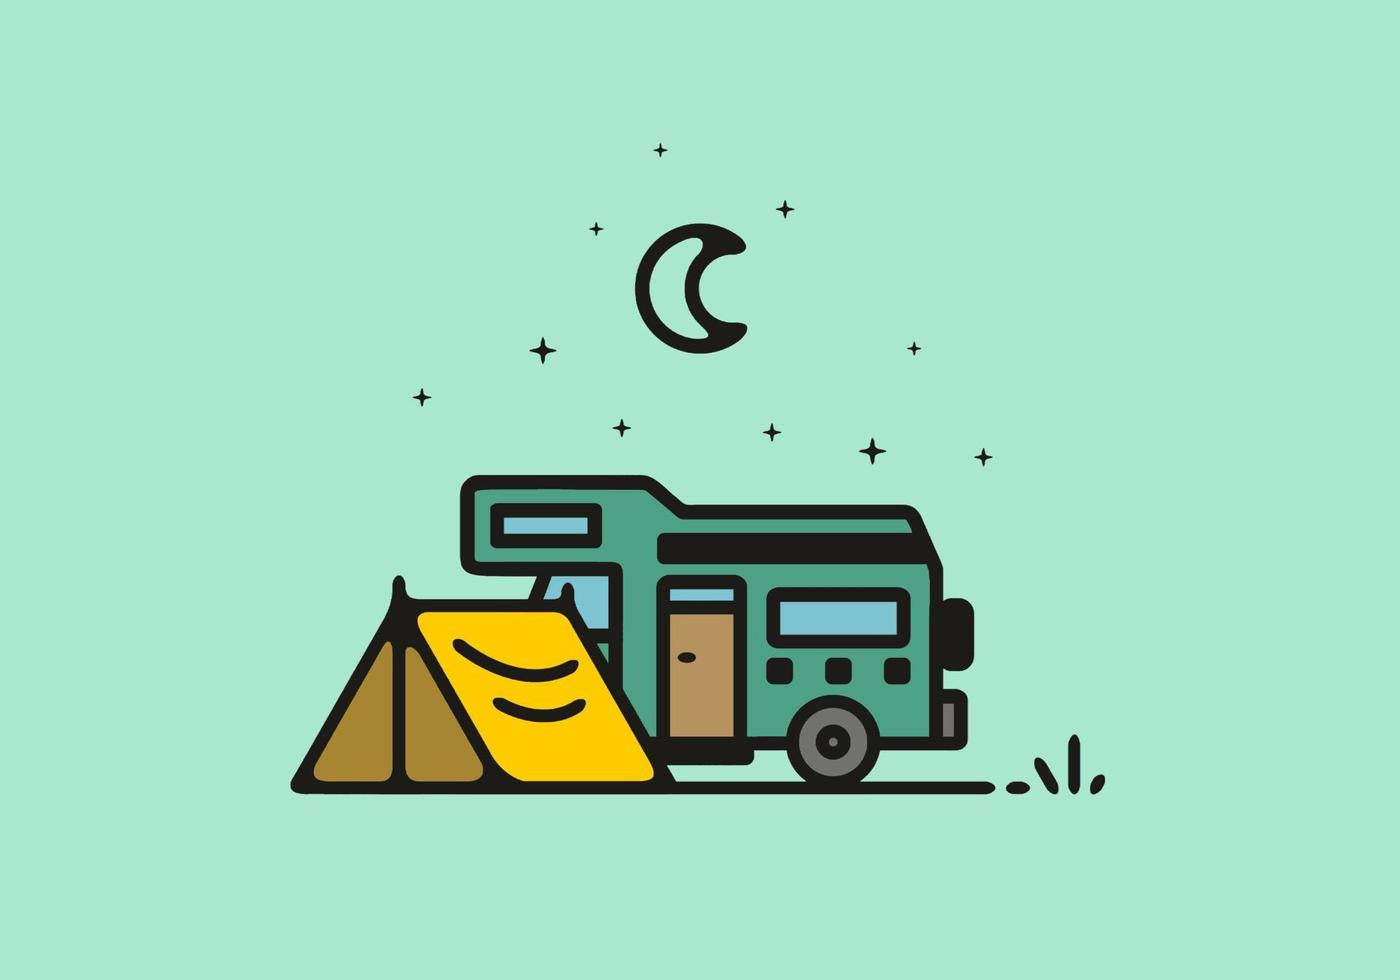 campeggio con illustrazione di arte al tratto di camper vettore